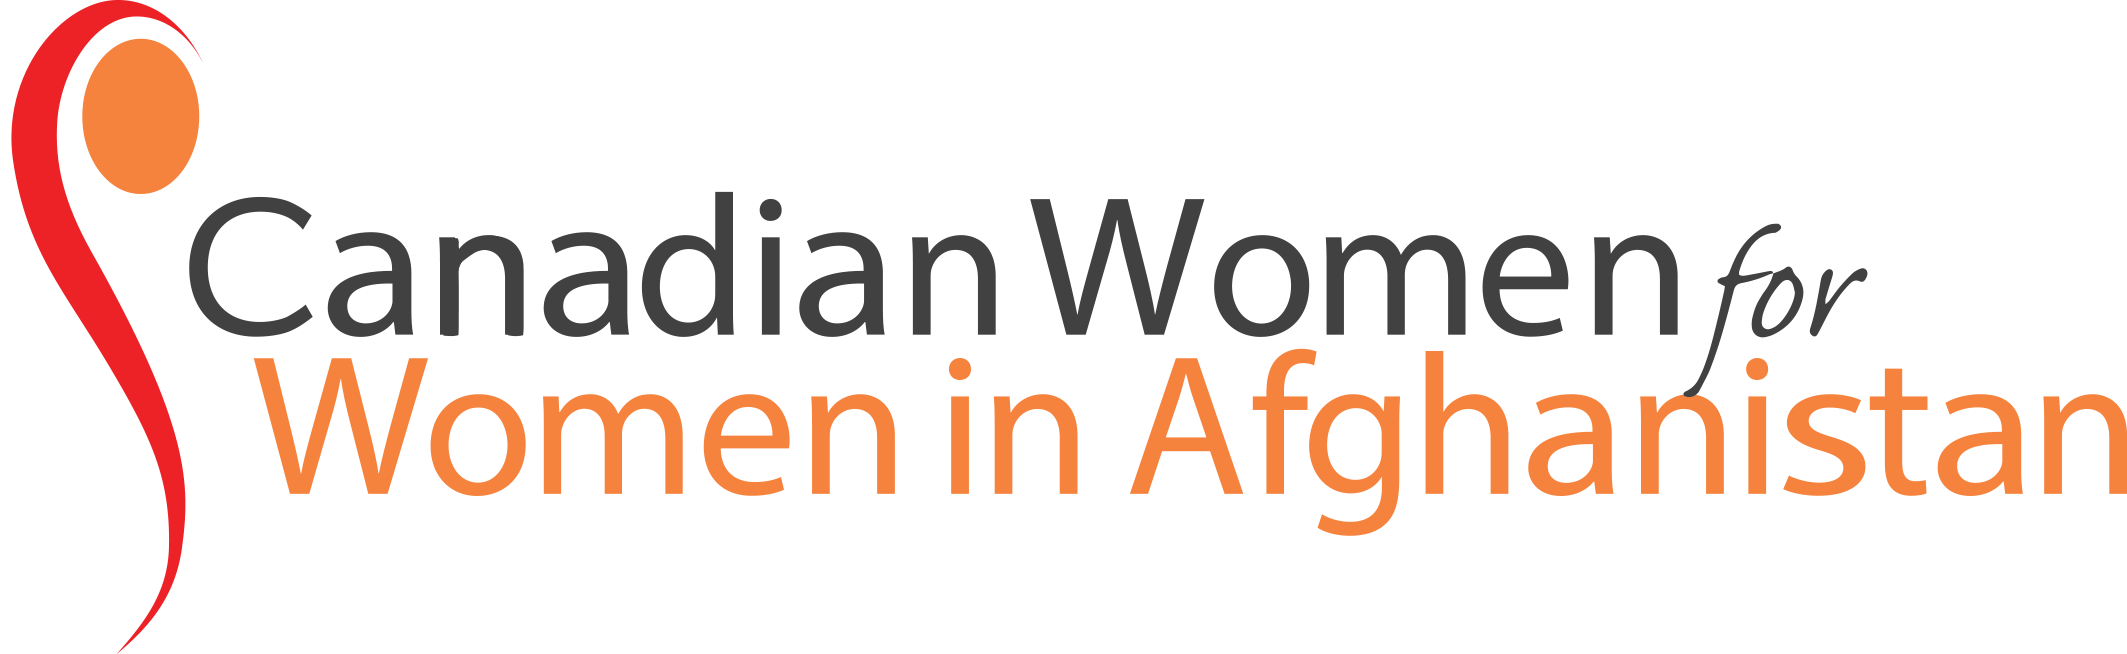 CW4WAfghan-logo